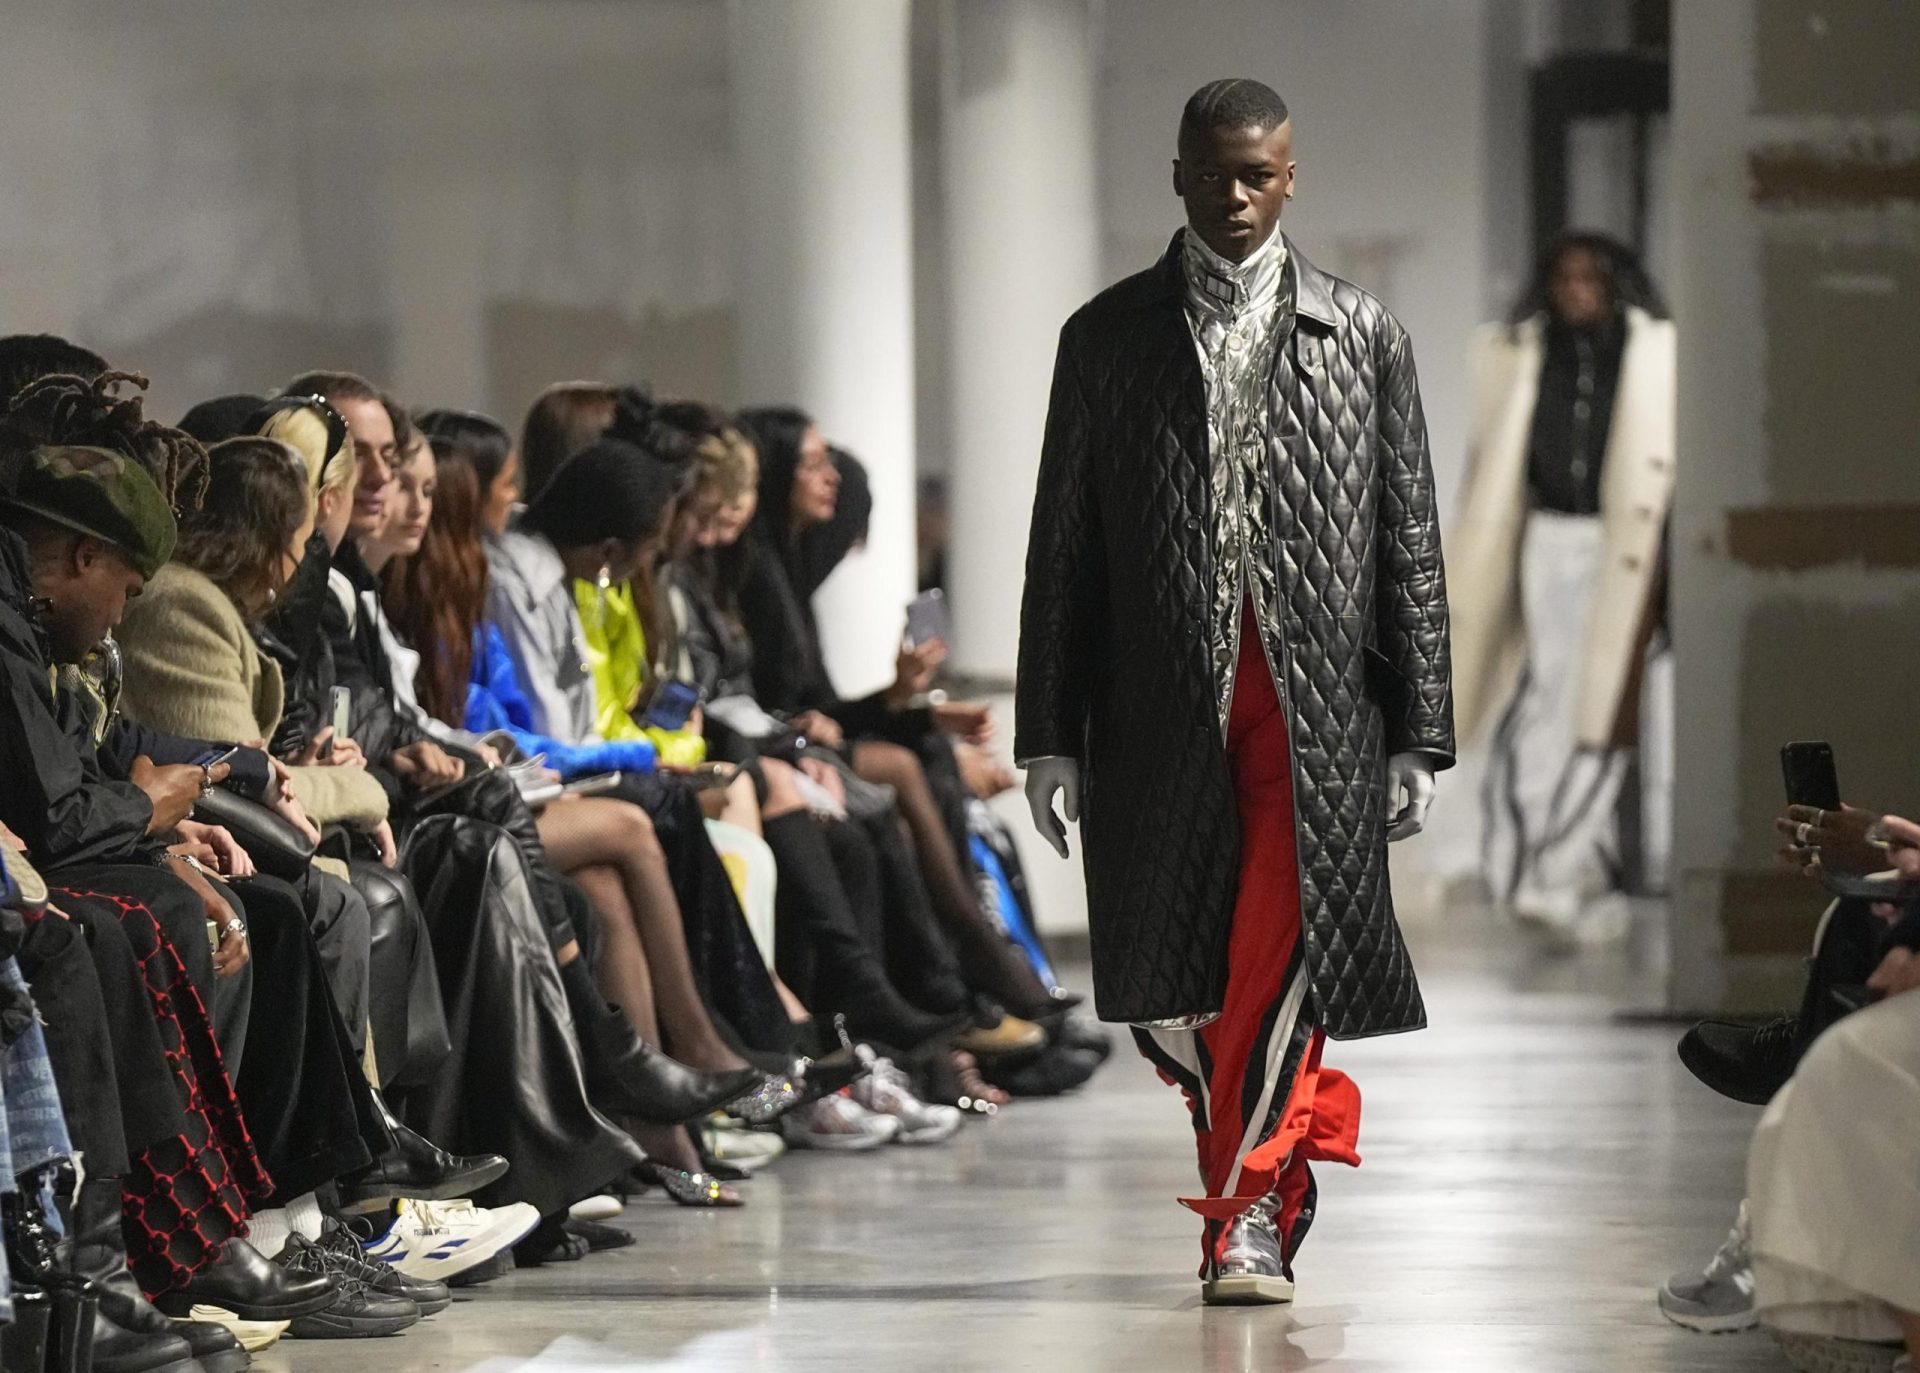 Moda parisina: Loewe encanta, VTMNTS estrena abrigos geniales